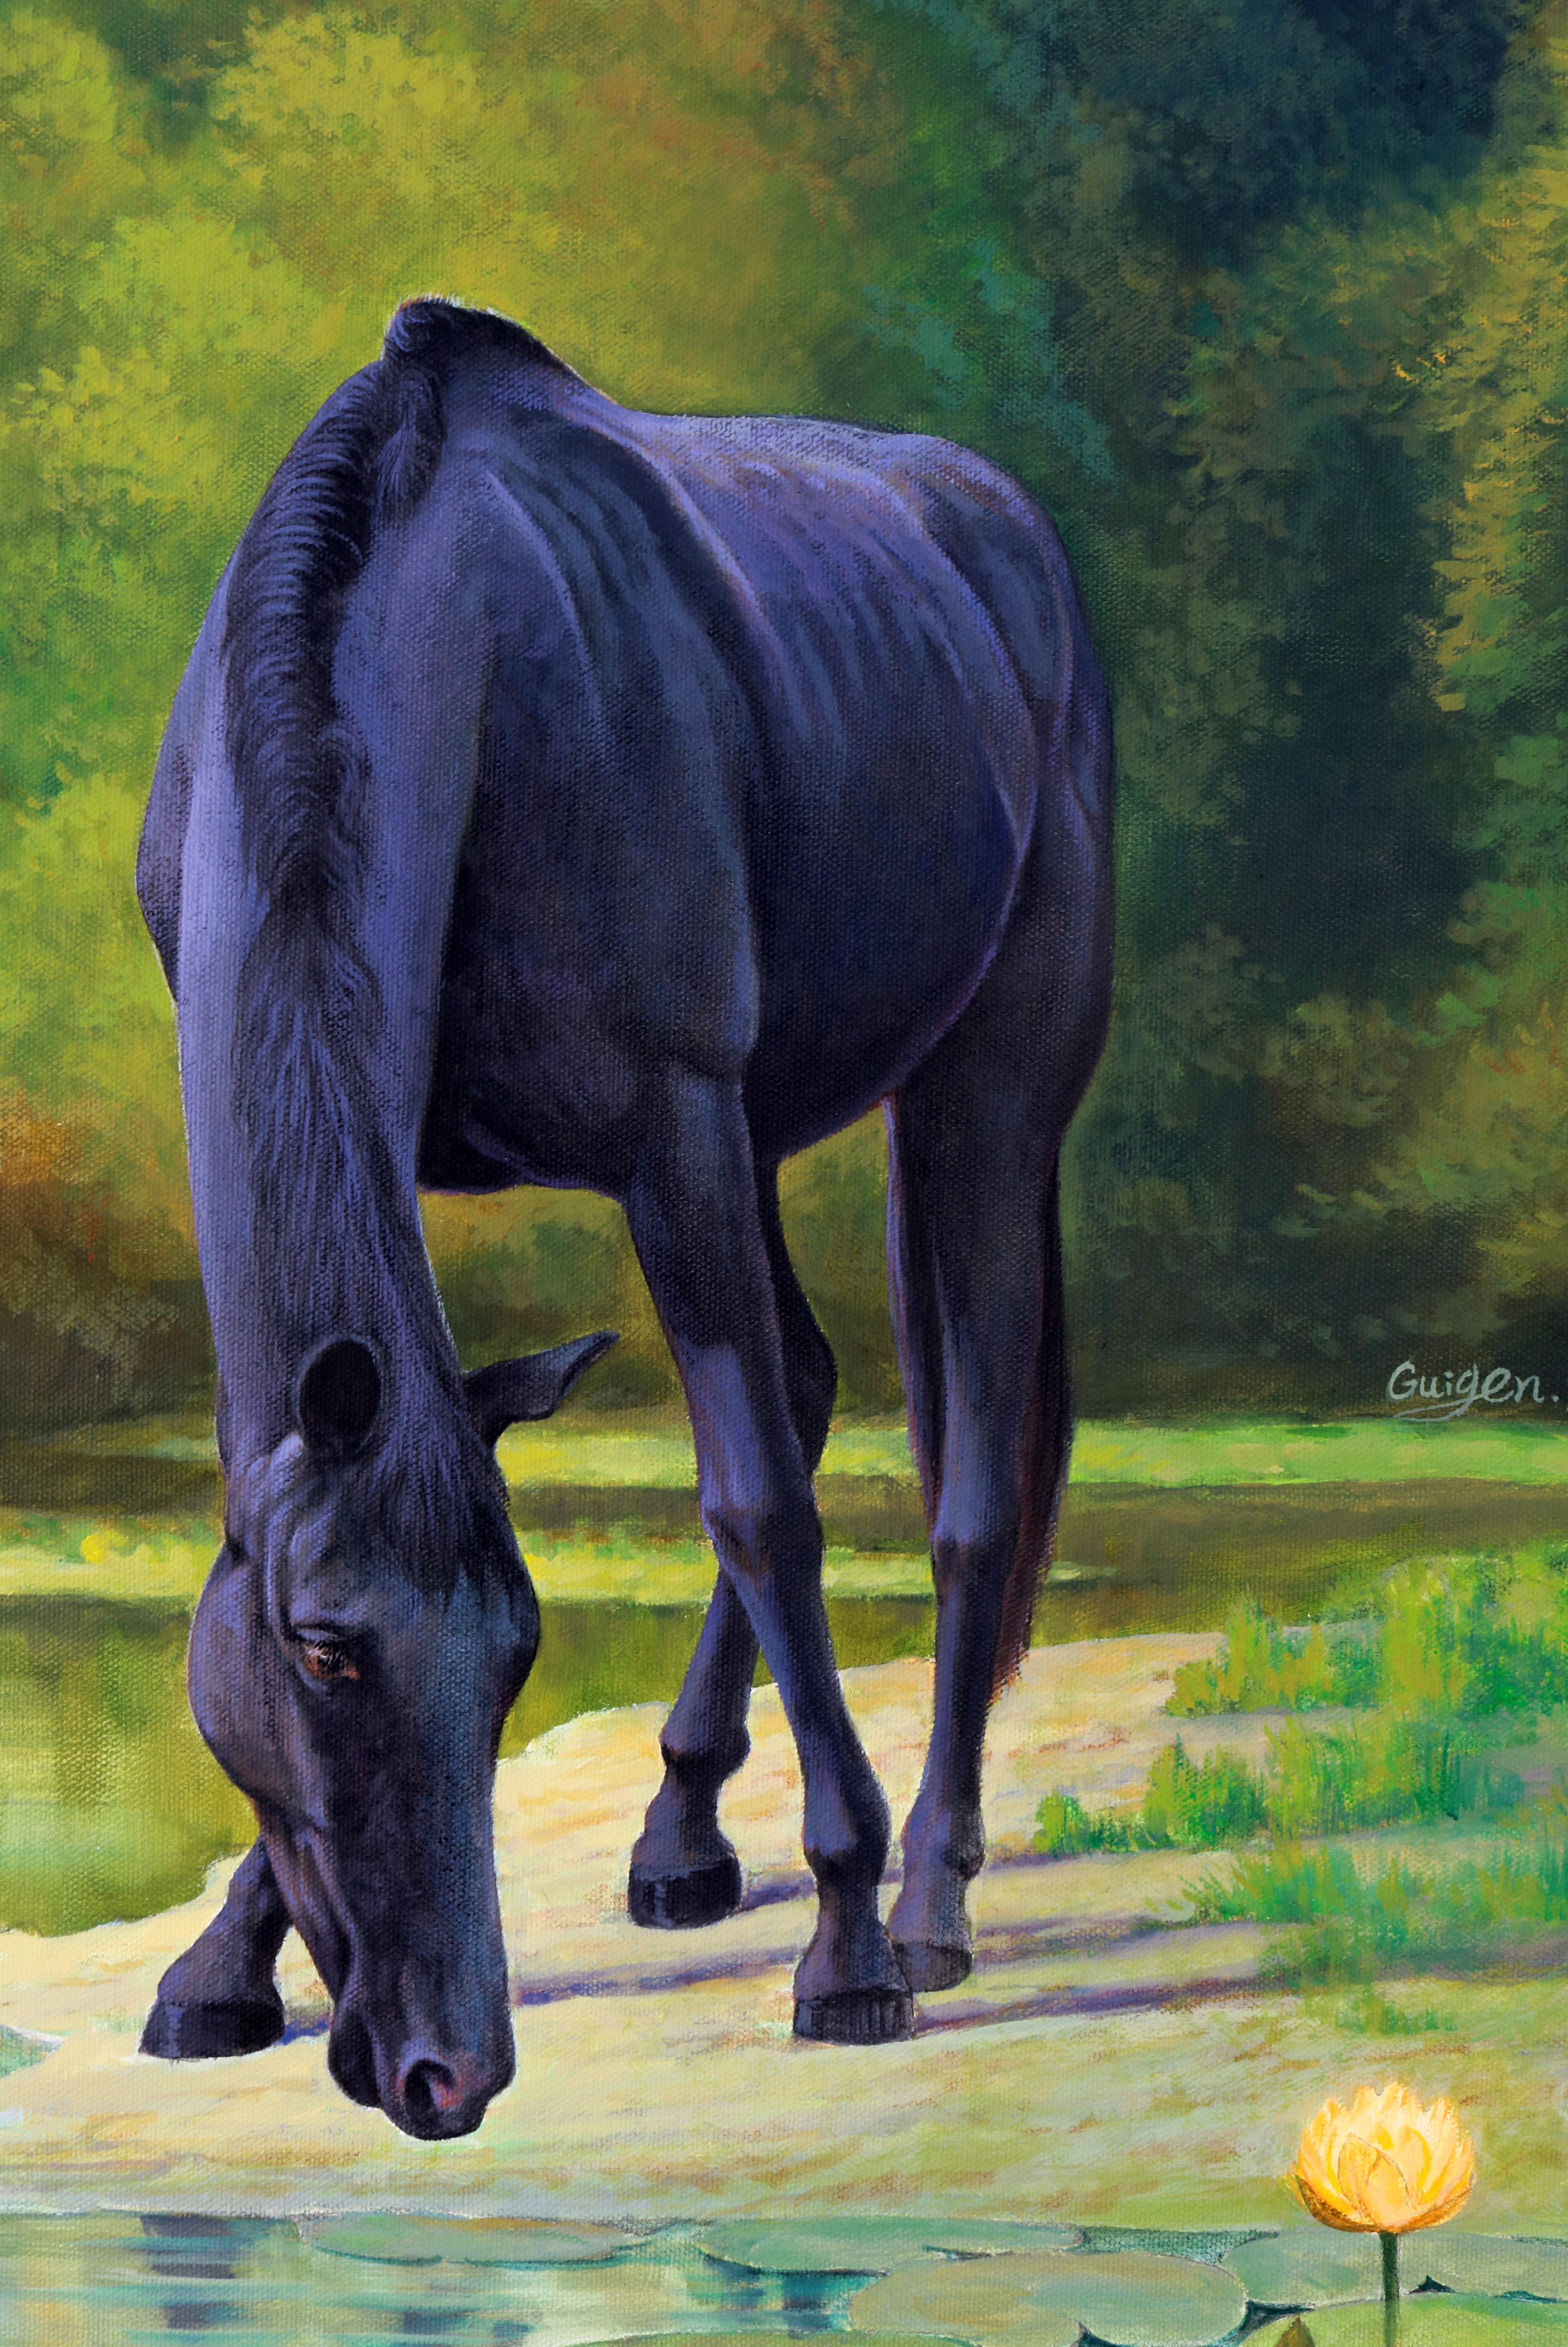 <p>Commentaires de l'artiste<br>Dans son style réaliste distinct, l'artiste Guigen Zha représente un cheval noir buvant de l'eau dans un étang de nénuphars paisible. Une partie de sa série Dreamland met en lumière les aspects fantaisistes de la